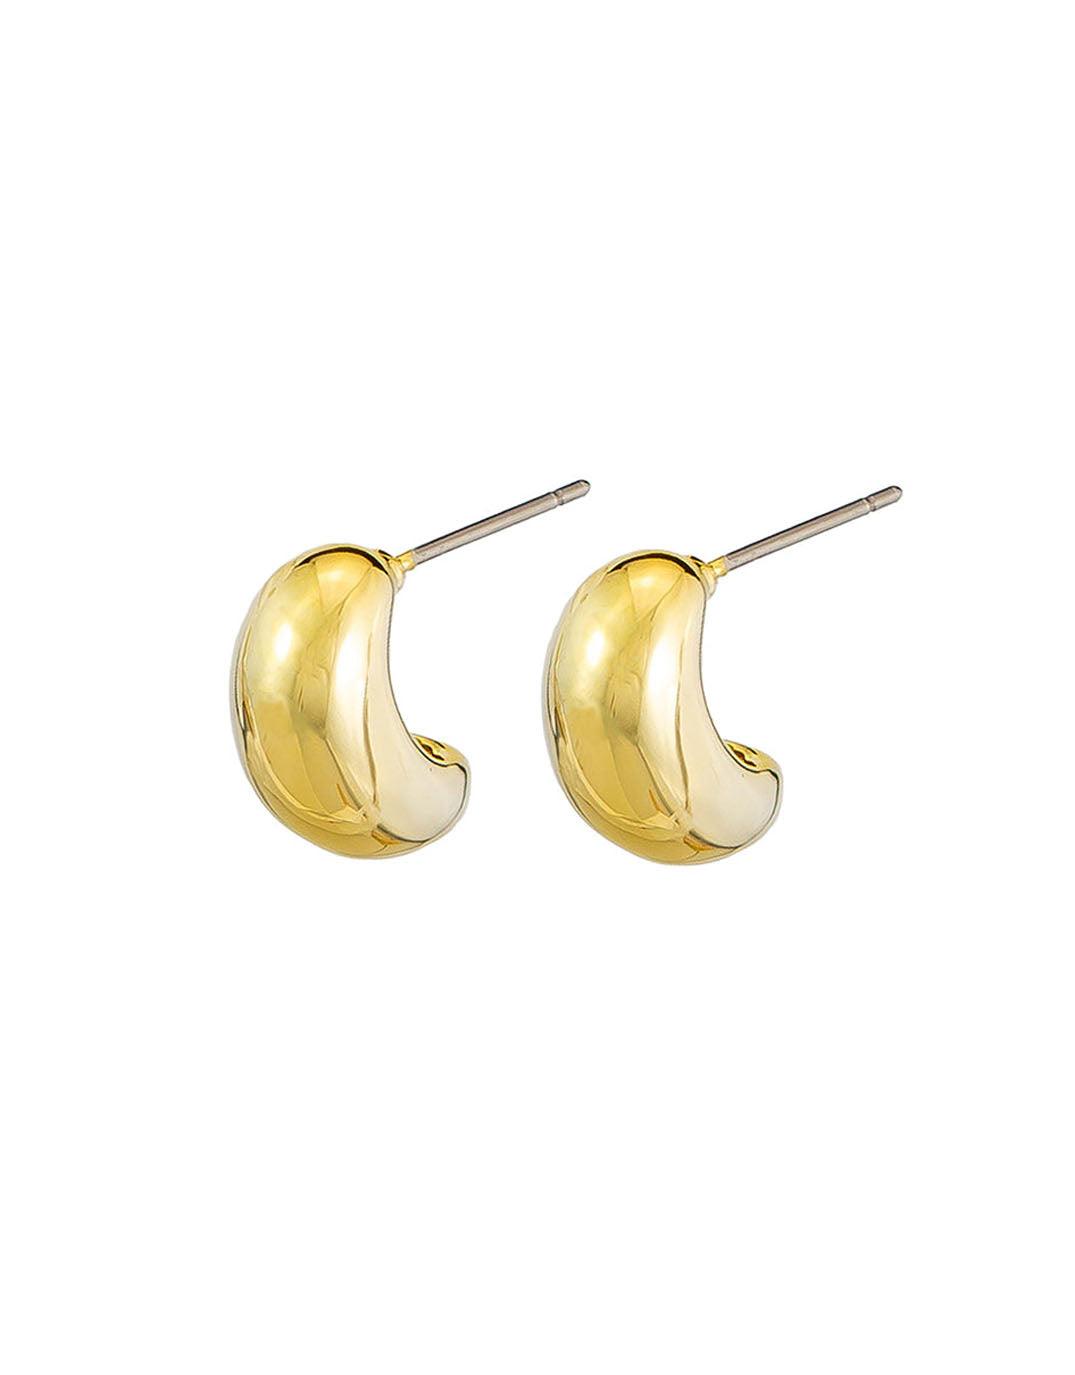 Jolie & Deen - Rumi Earrings - Gold - paulaglazebrook Accessories